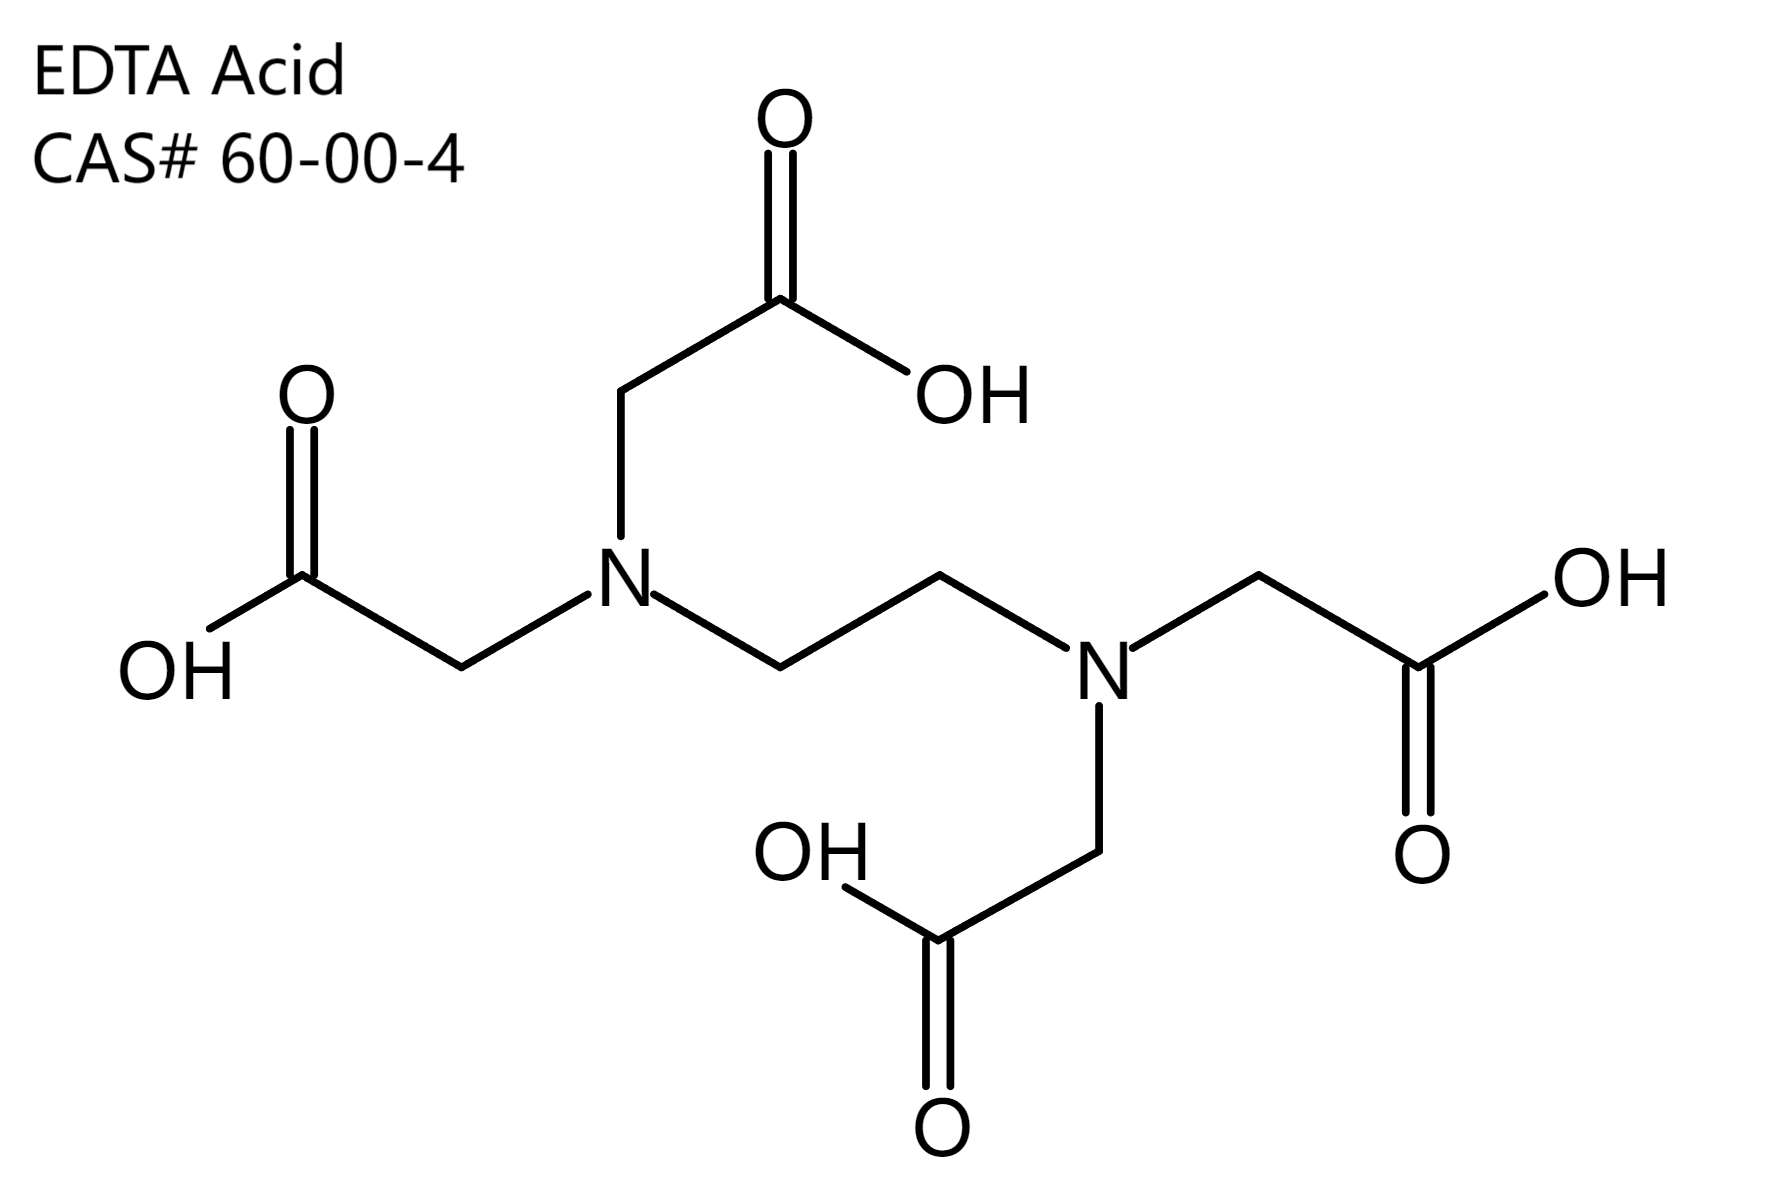 edta-acid-structure